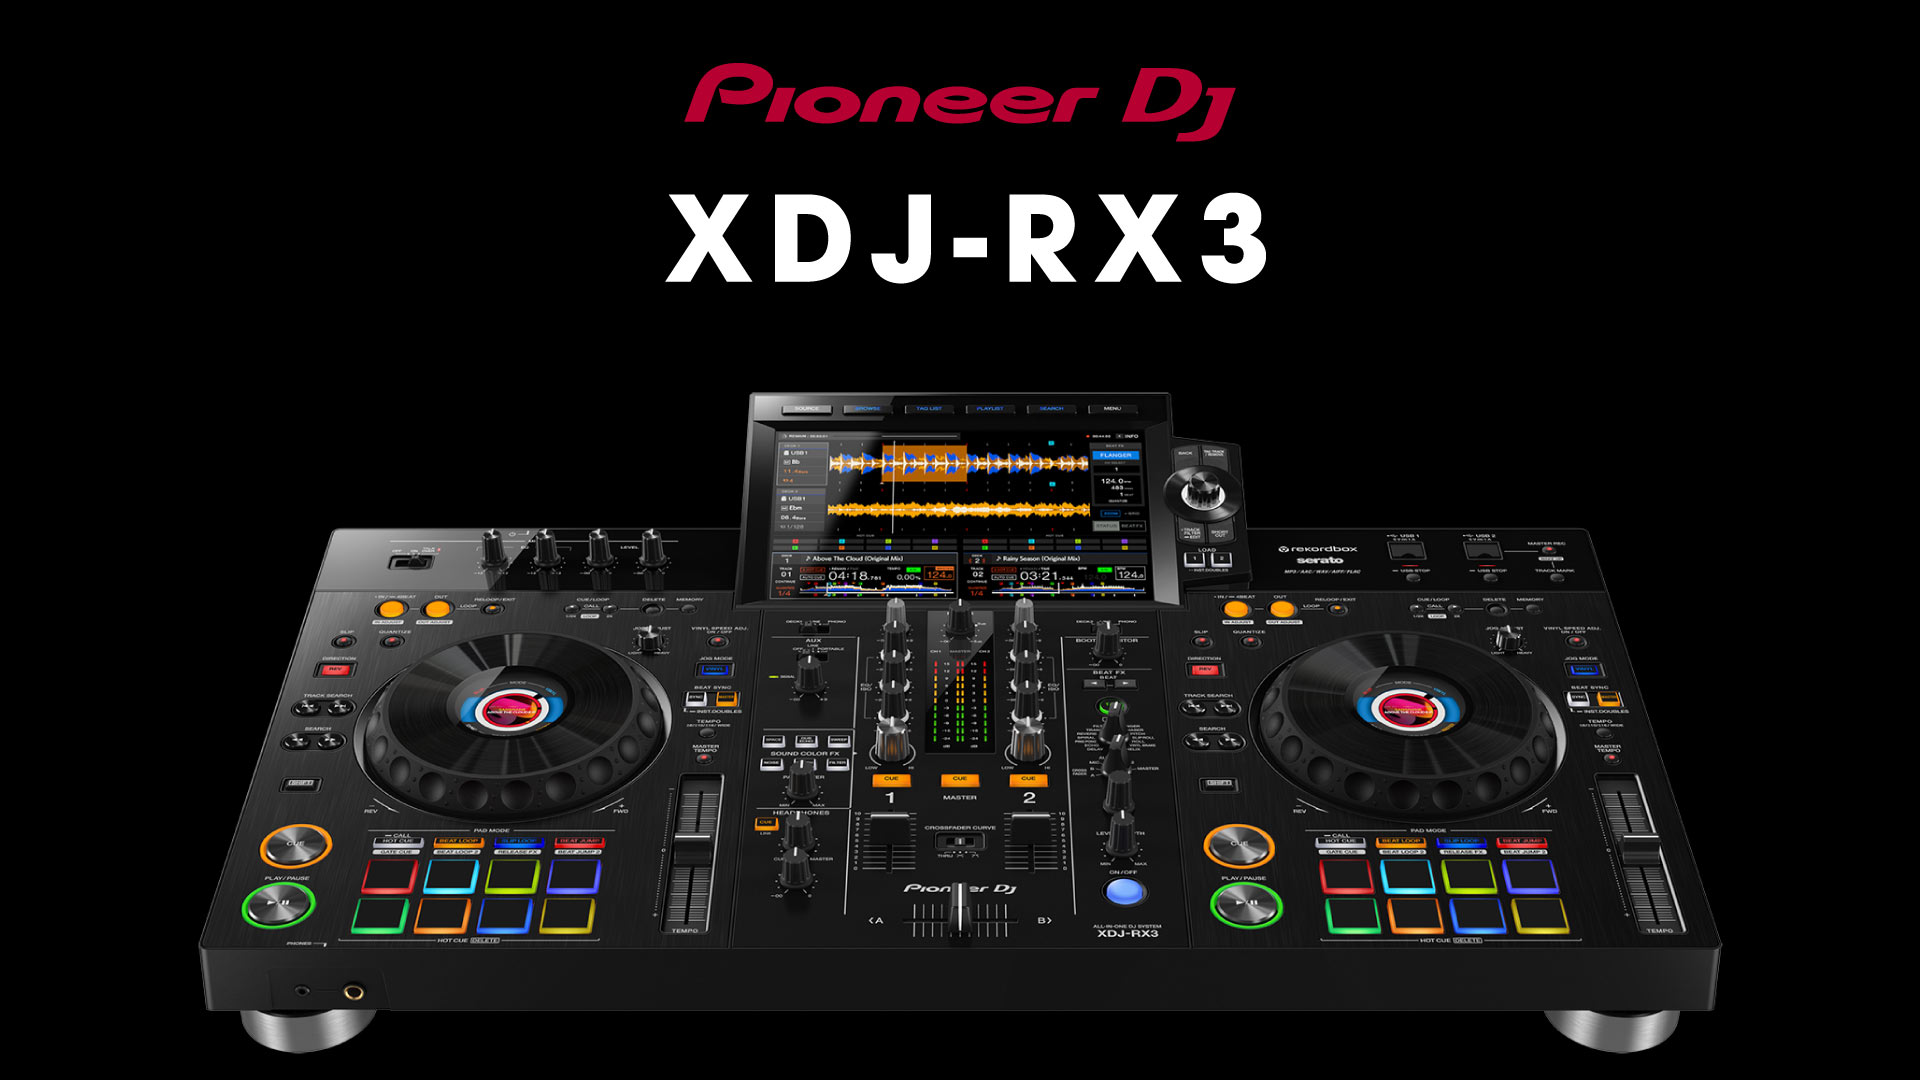 最強の操作性と納得の機能性が実現！注目のオールインワンDJシステム、Pioneer DJ XDJ-RX3の強力ポイントご紹介！